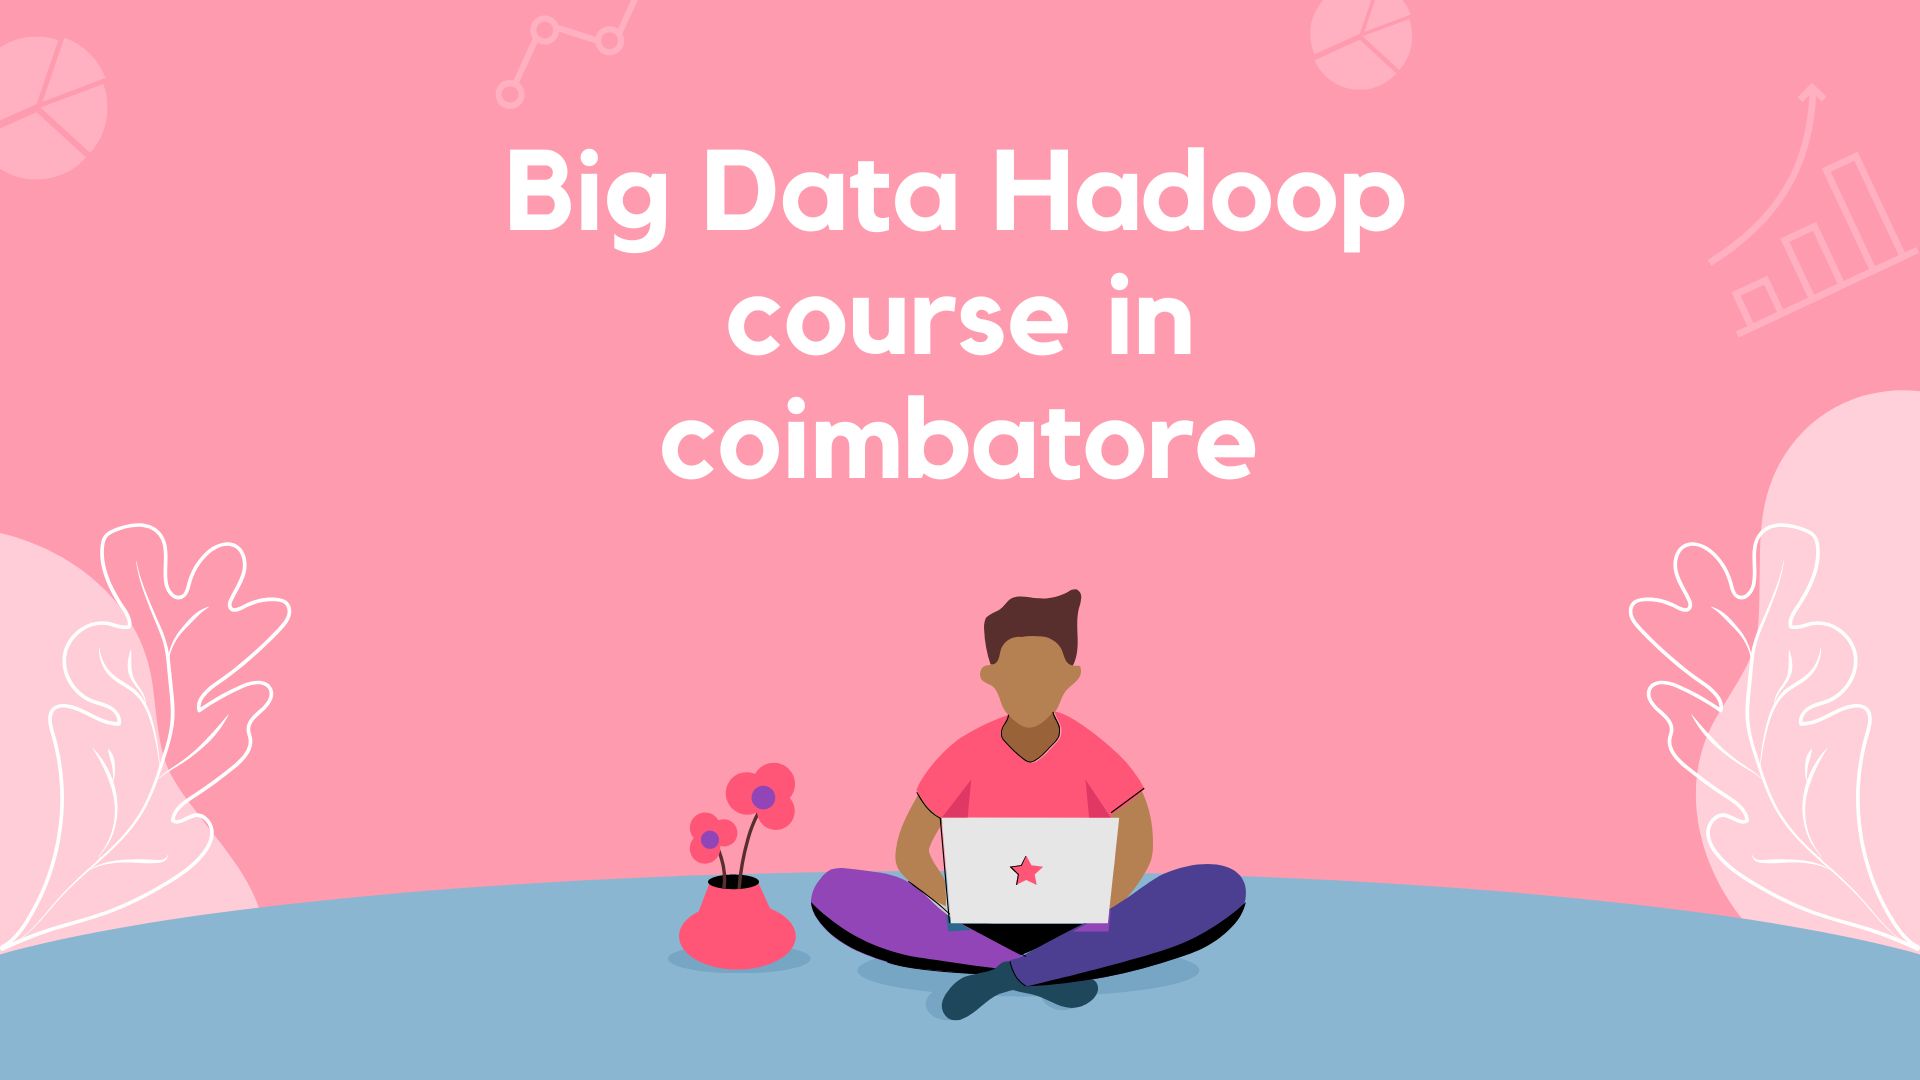 Big Data Hadoop course in coimbatore